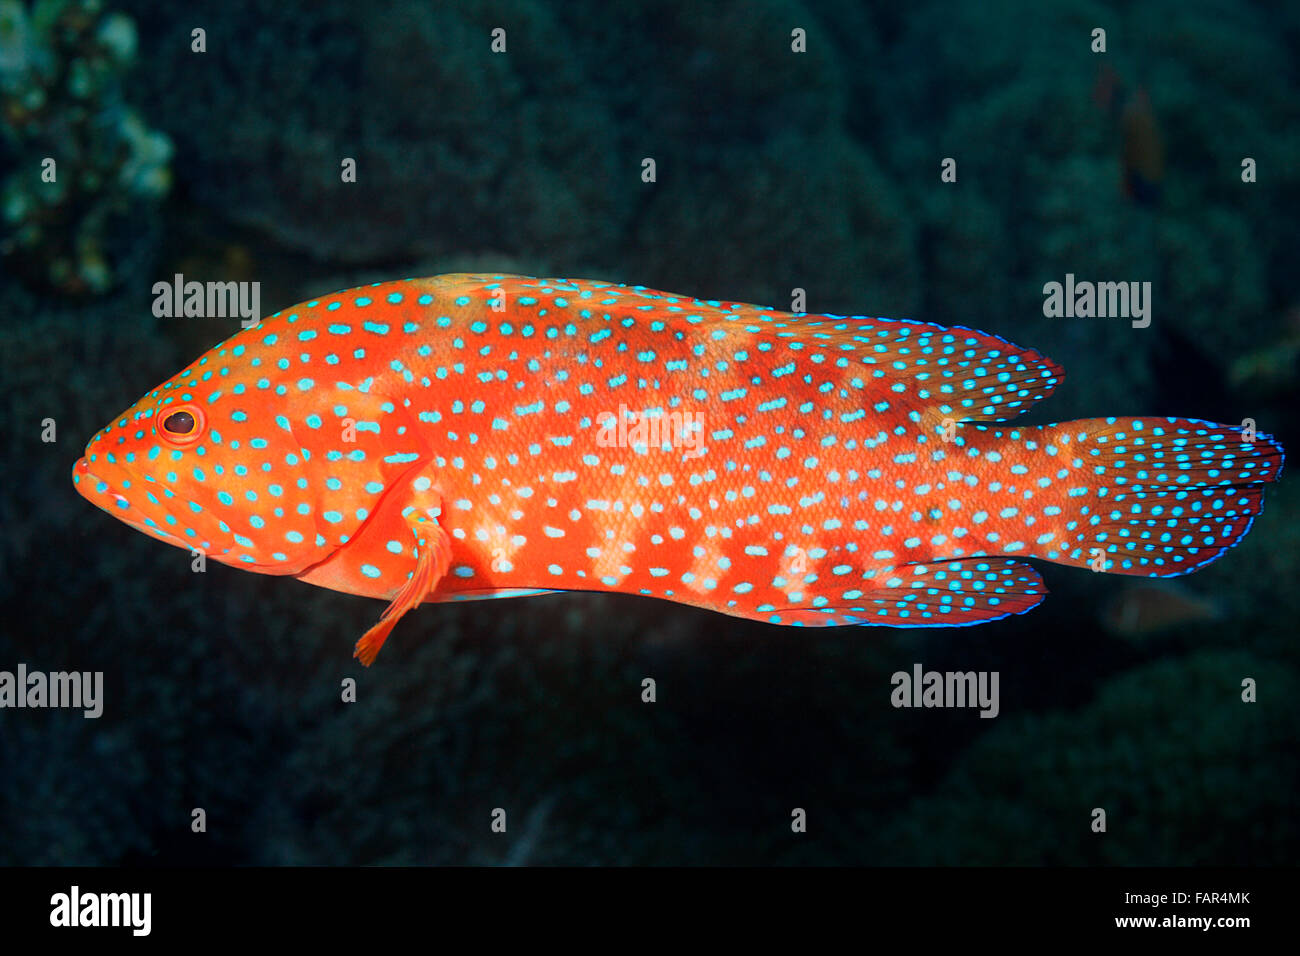 Korallen Zackenbarsch, auch bekannt als Coral Kabeljau und Coral Hind. Cephalopholis Miniata. Tulamben, Bali, Indonesien. Bali Meer, Indischer Ozean Stockfoto